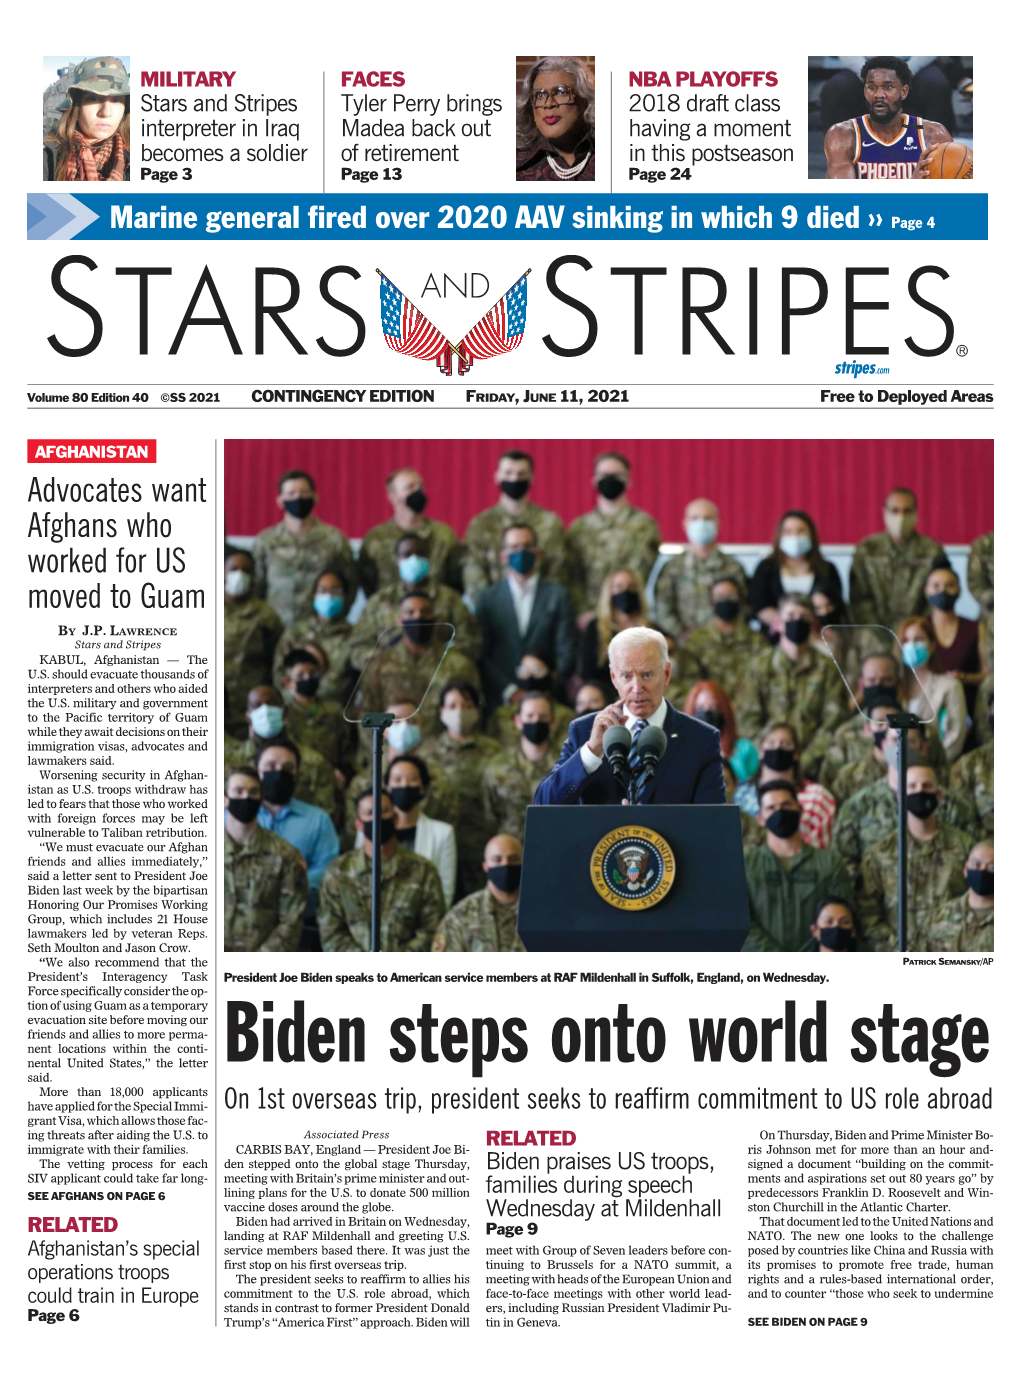 Biden Steps Onto World Stage Said